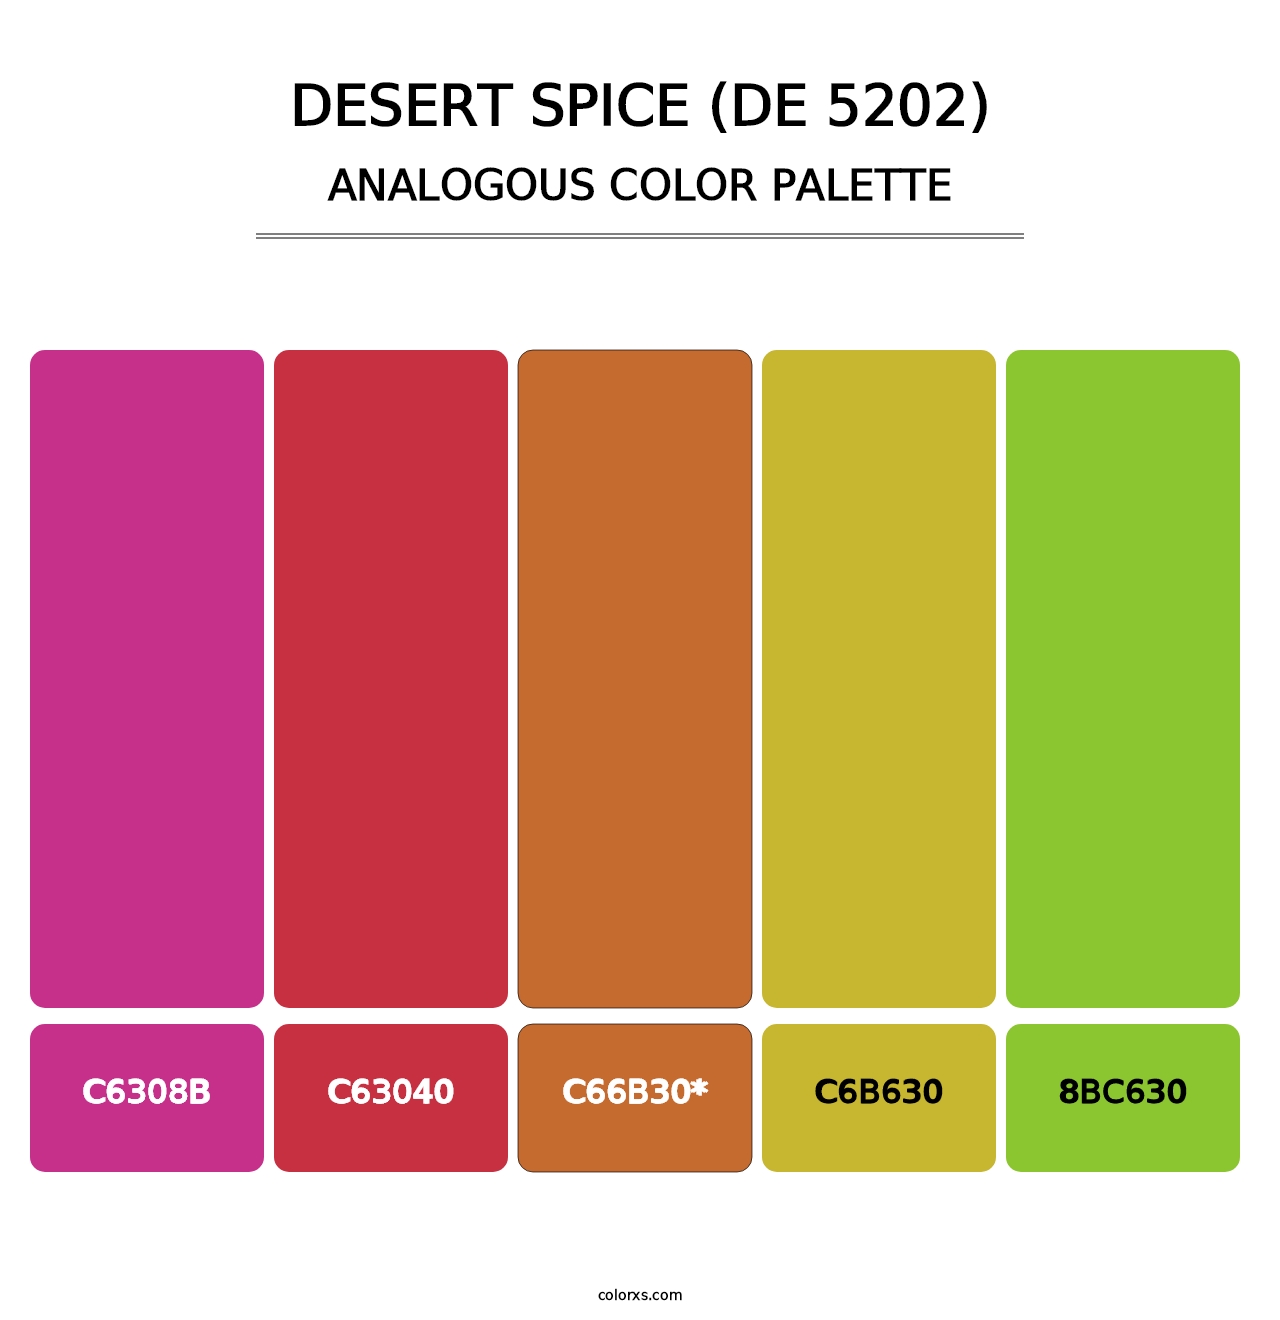 Desert Spice (DE 5202) - Analogous Color Palette